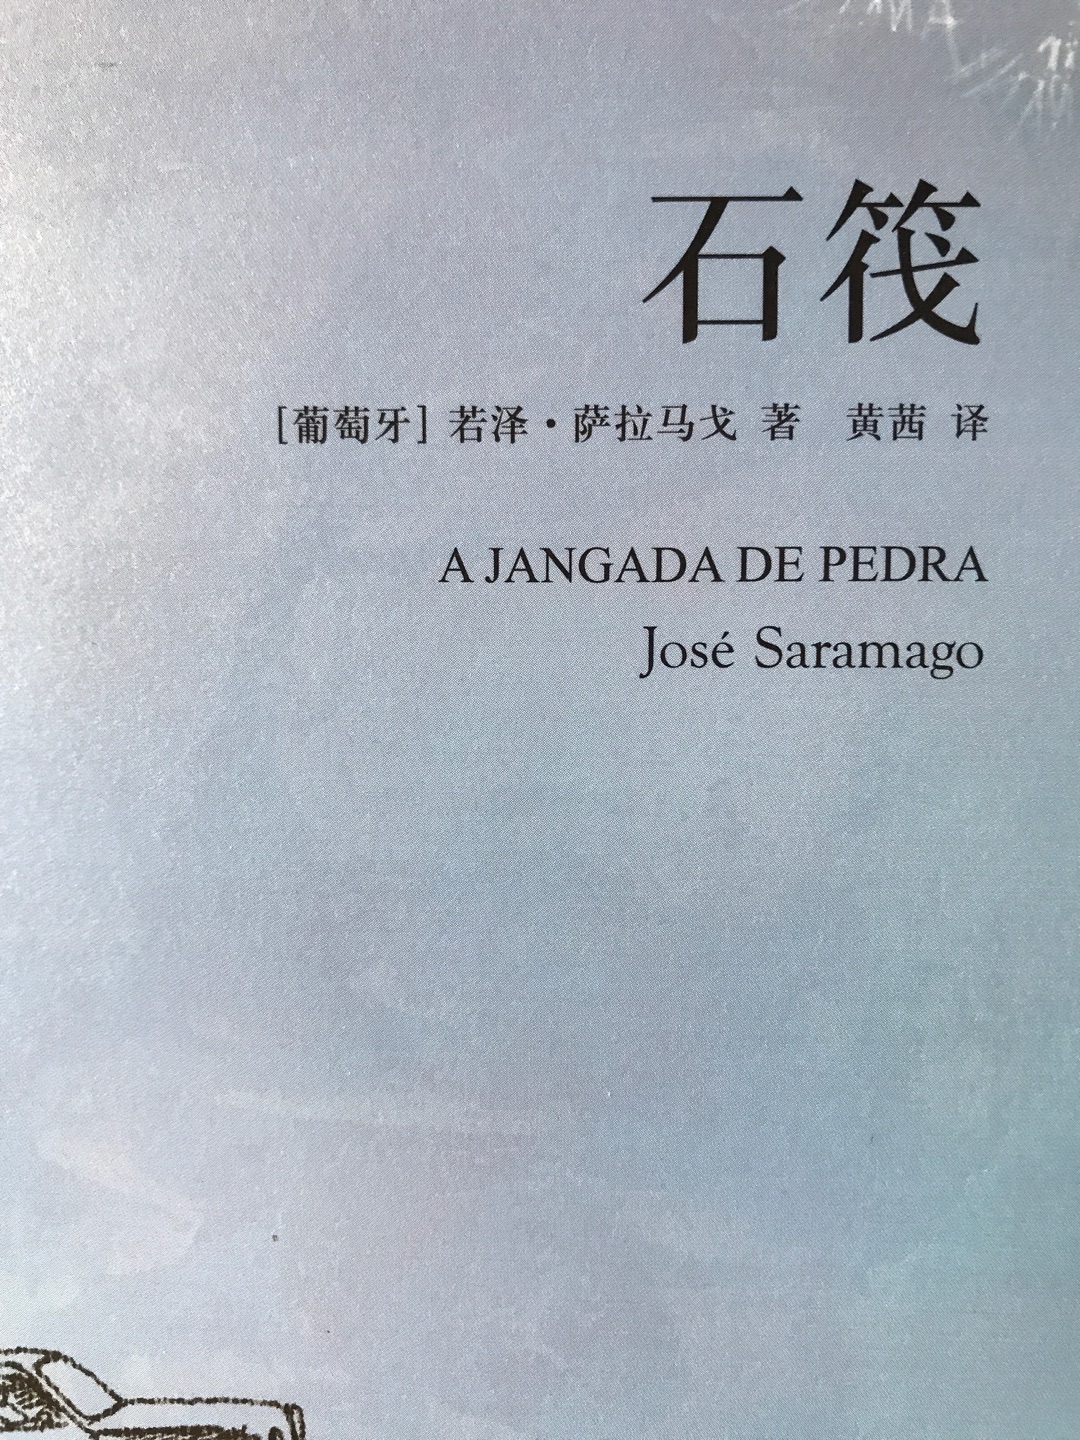 诺贝尔文学奖获得者萨拉马戈经典作品。作家出版社7本萨拉马戈作品之一。